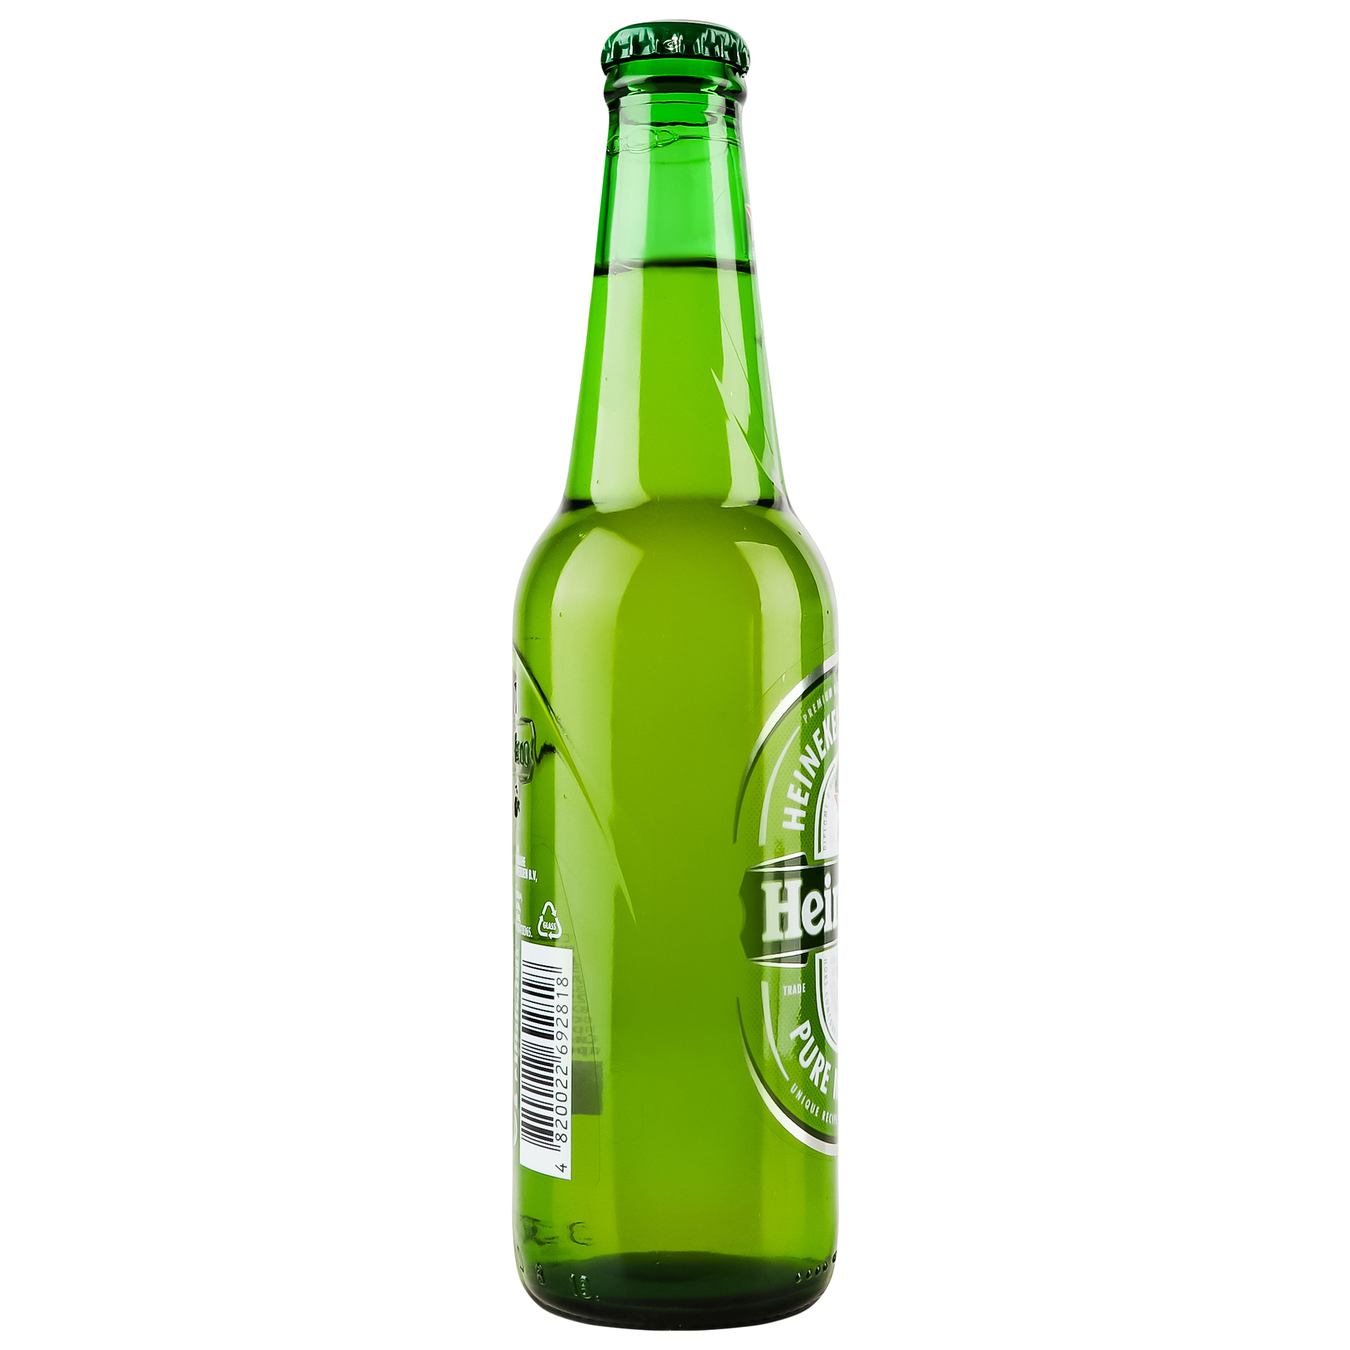 Пиво Heineken светлое фильтрованное пастеризованное 5% 0,33л 3